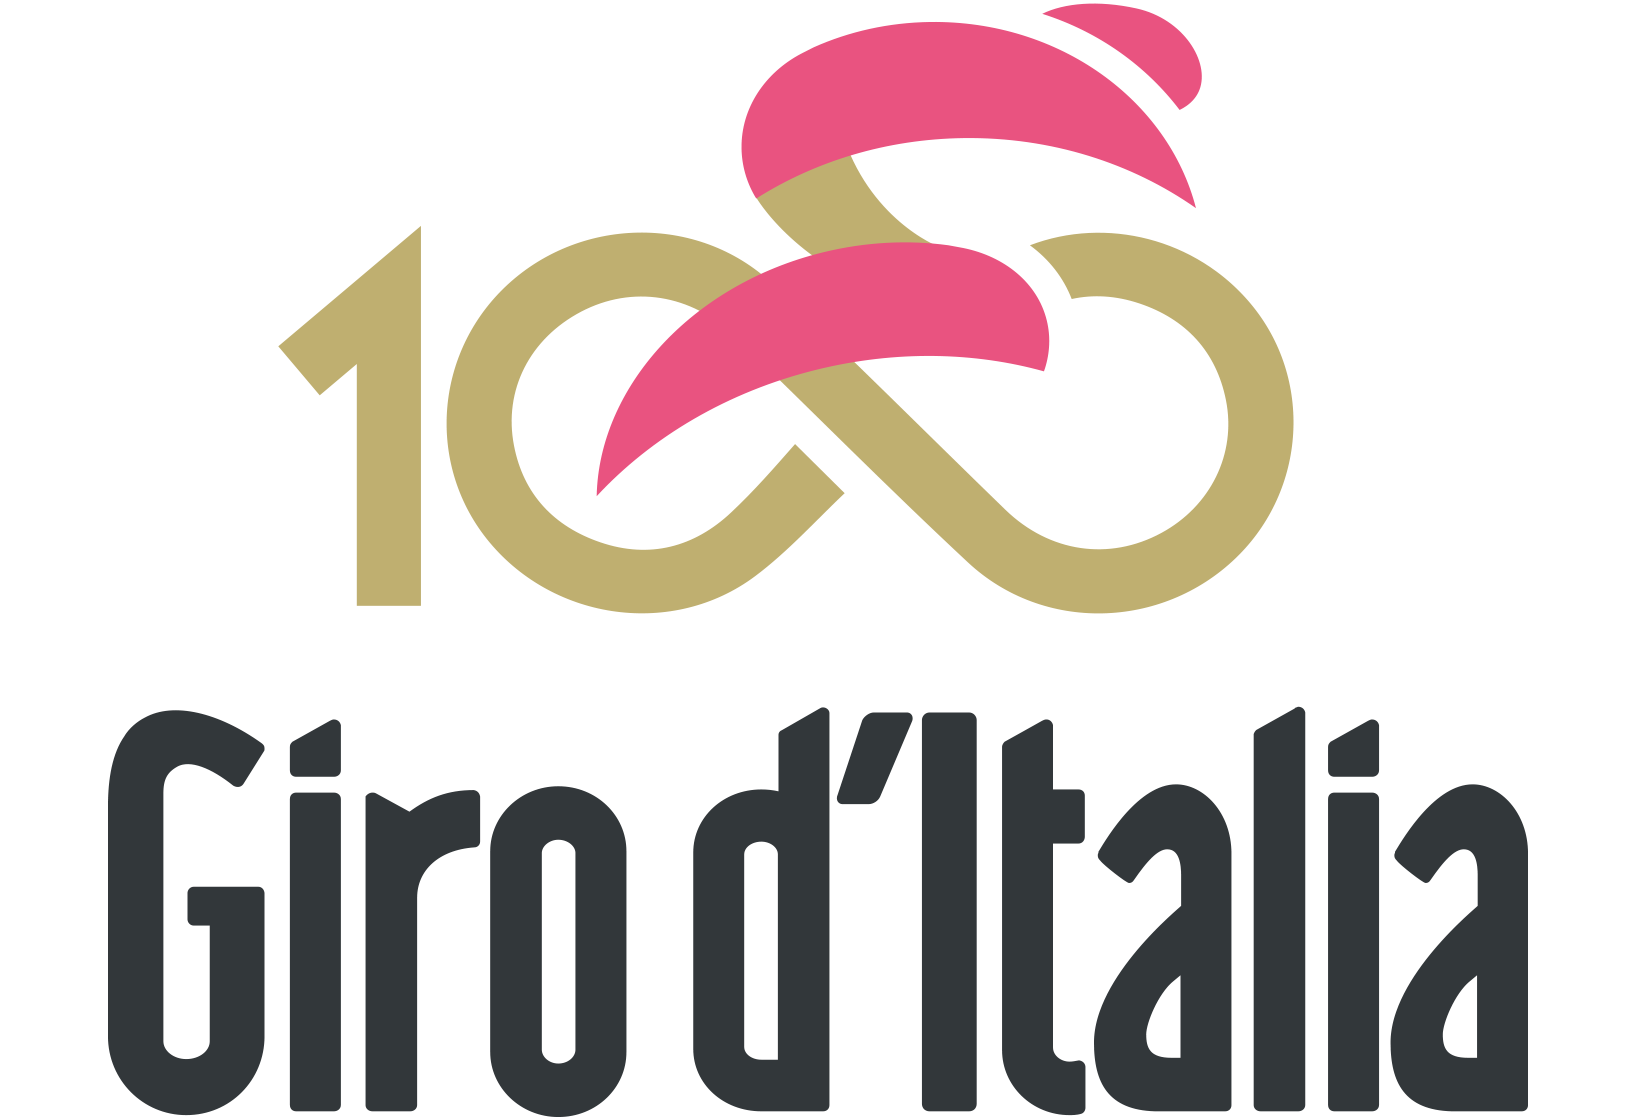 El Giro del centenario saldrá de Cerdeña y promete un recorrido montañoso